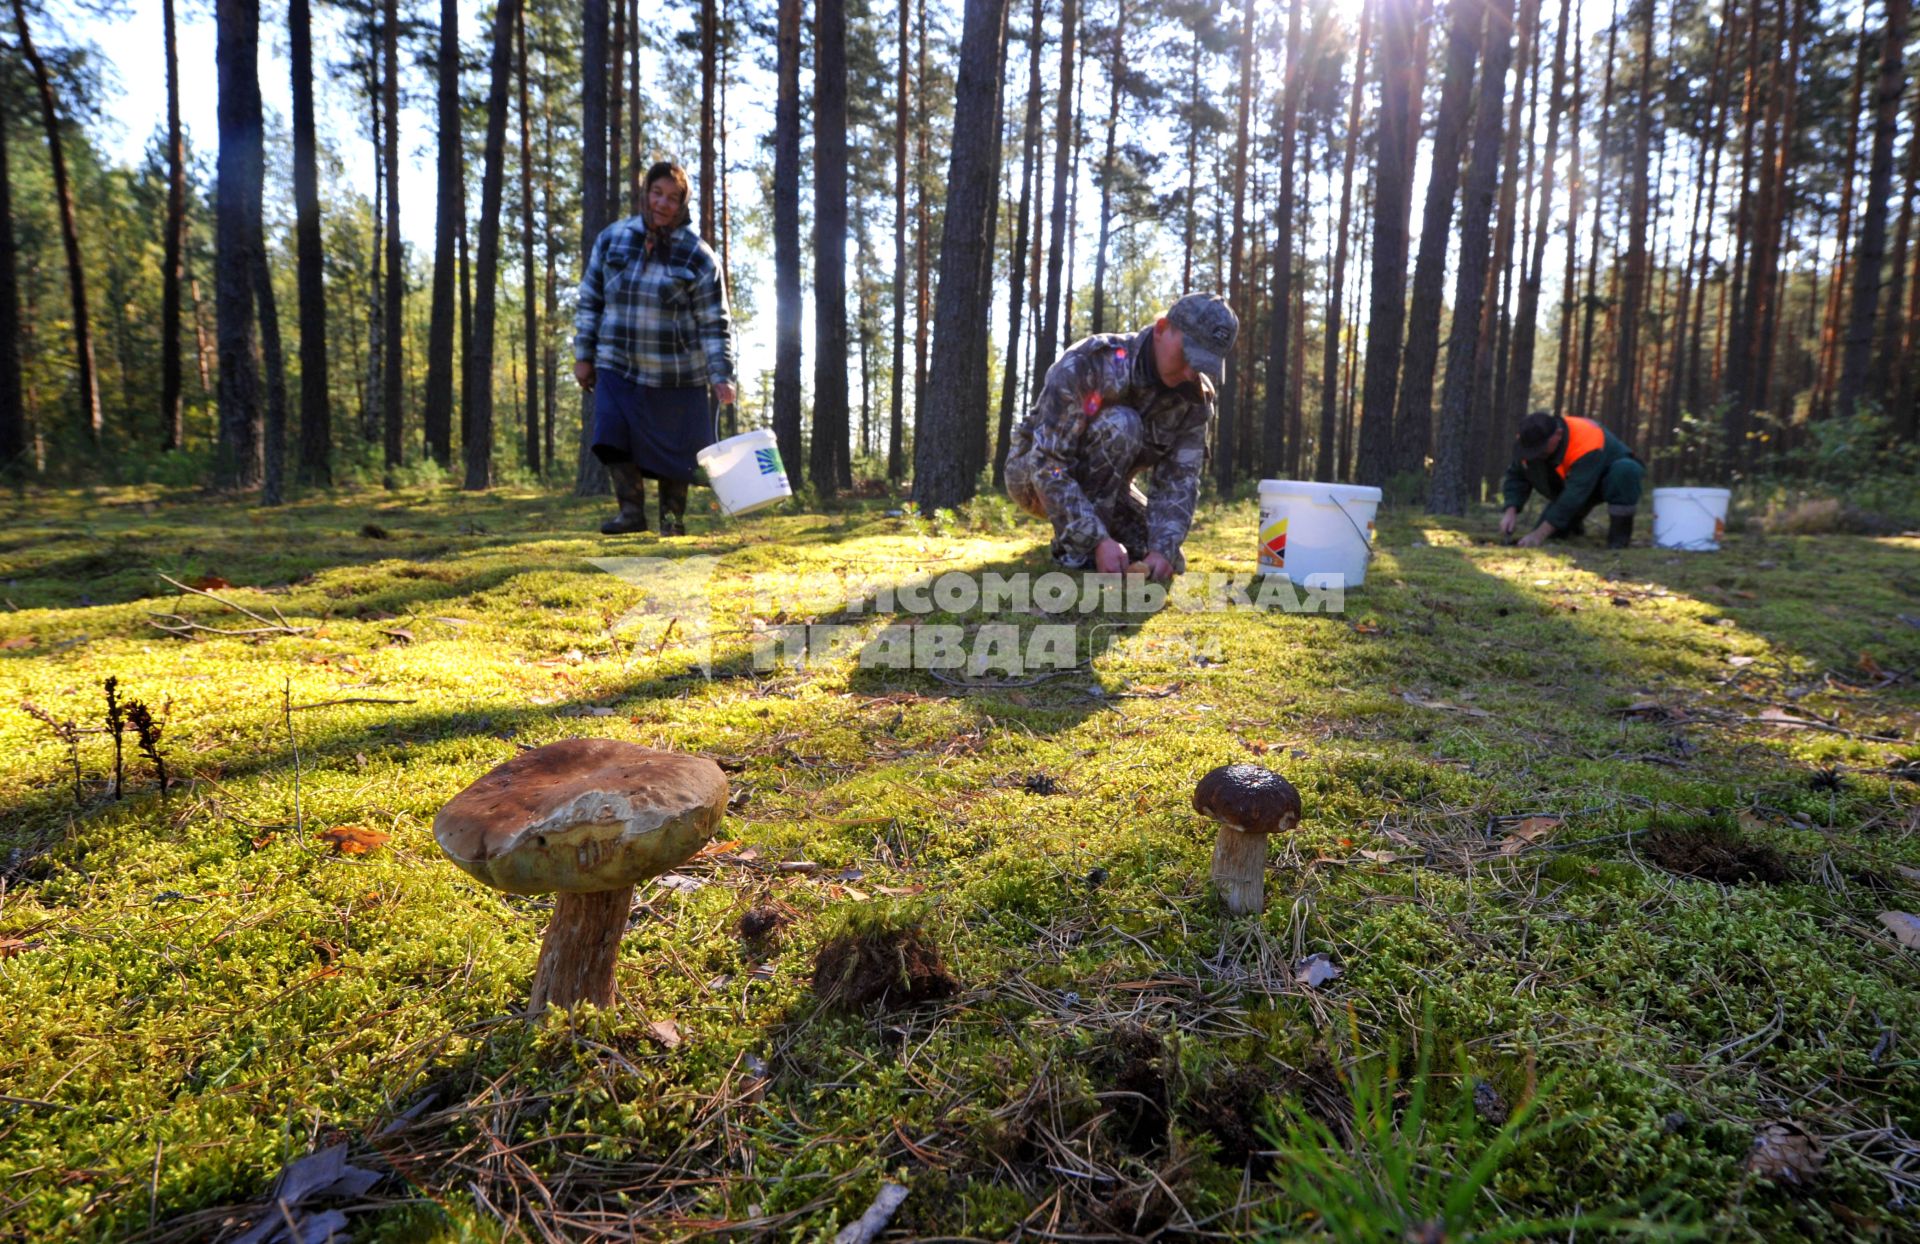 Грибники собирают в лесу грибы.